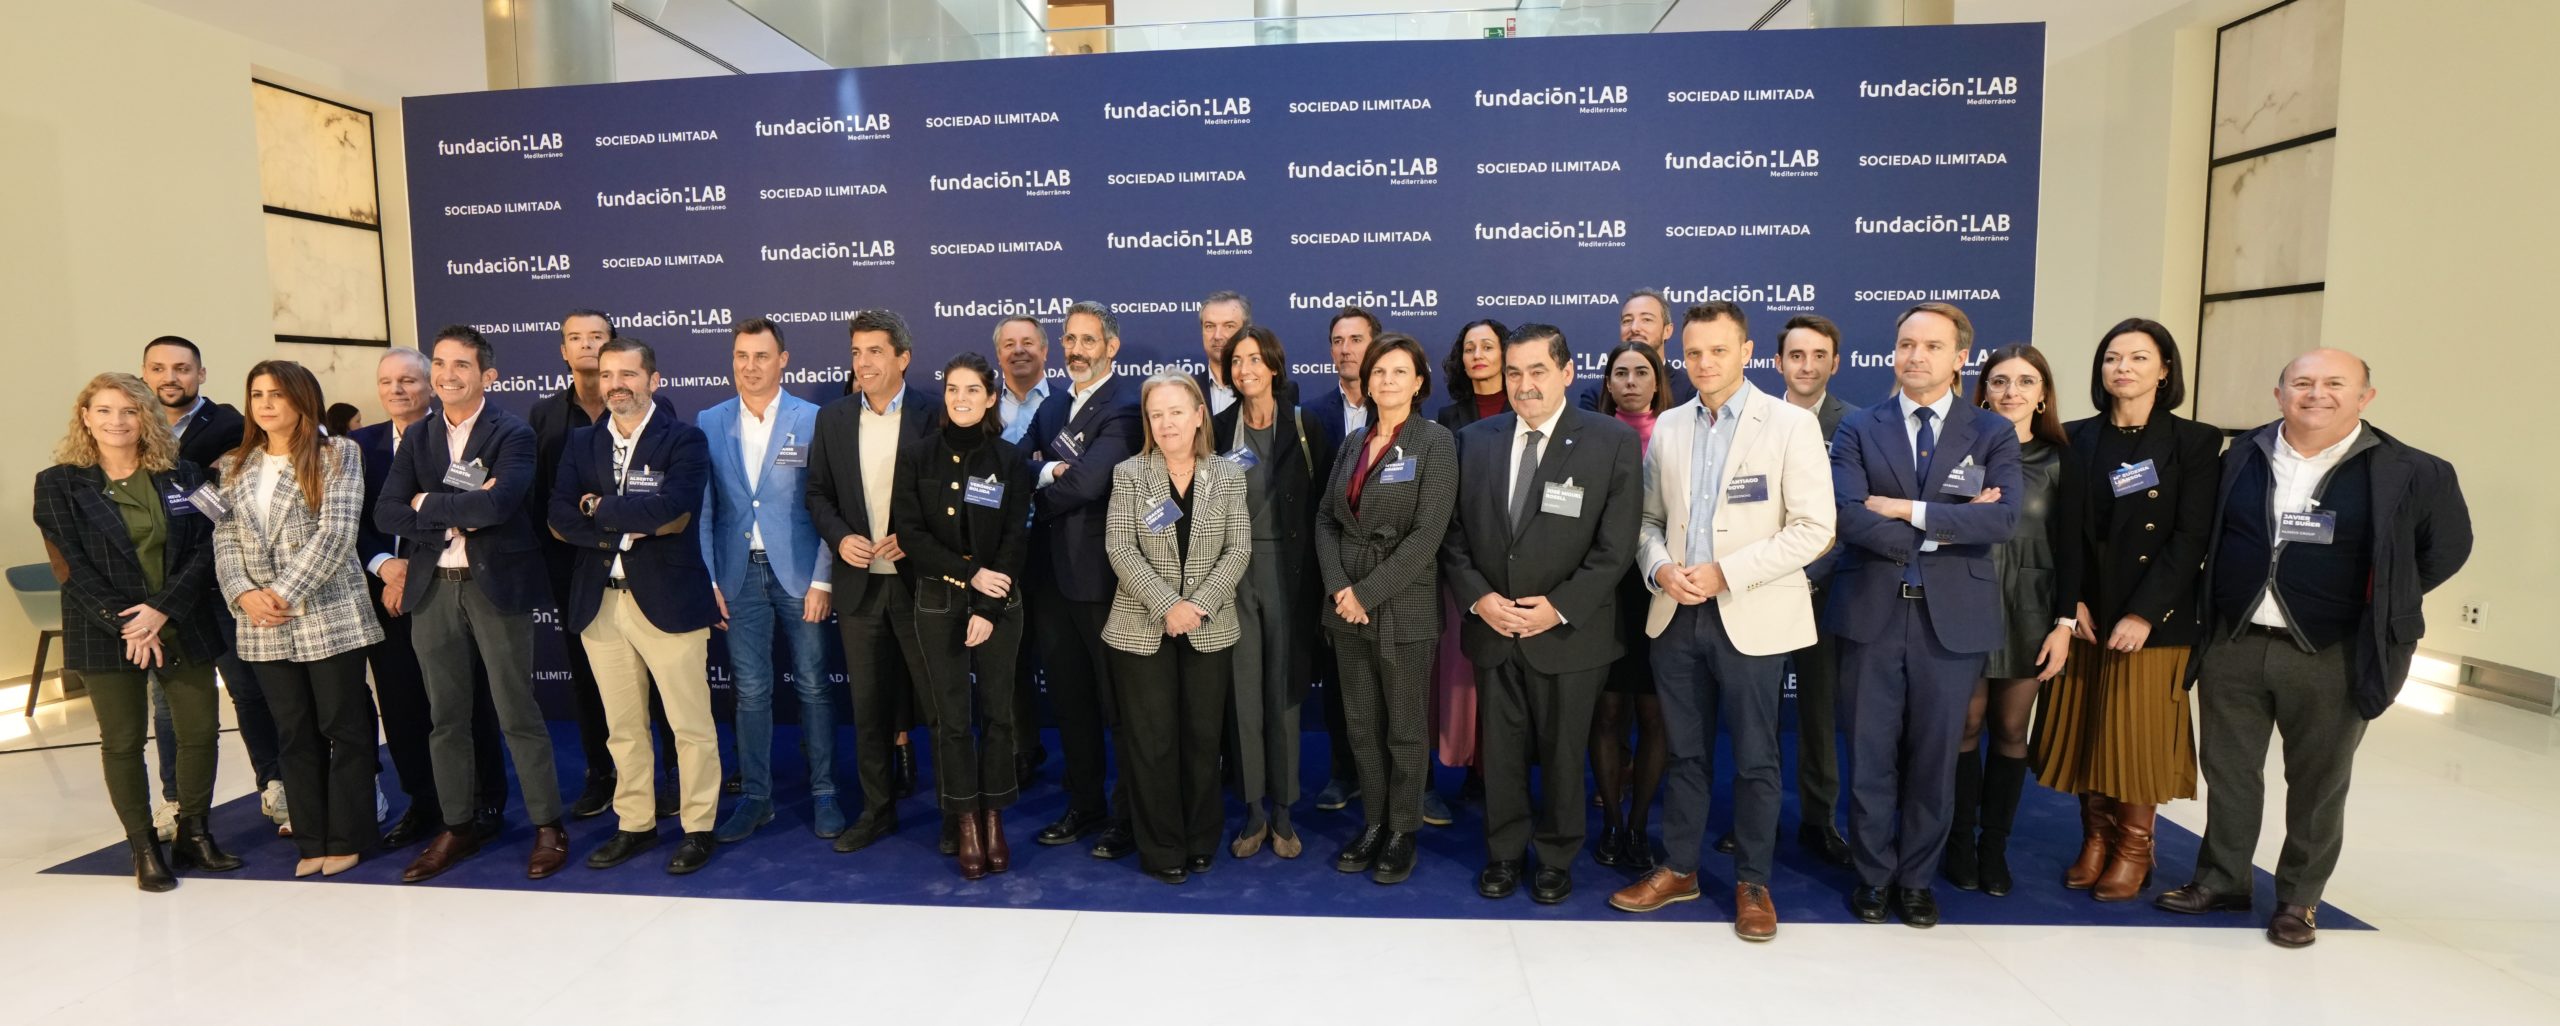 Fundación LAB Mediterráneo reafirma su compromiso con la tecnología en su última sesión divulgativa del año